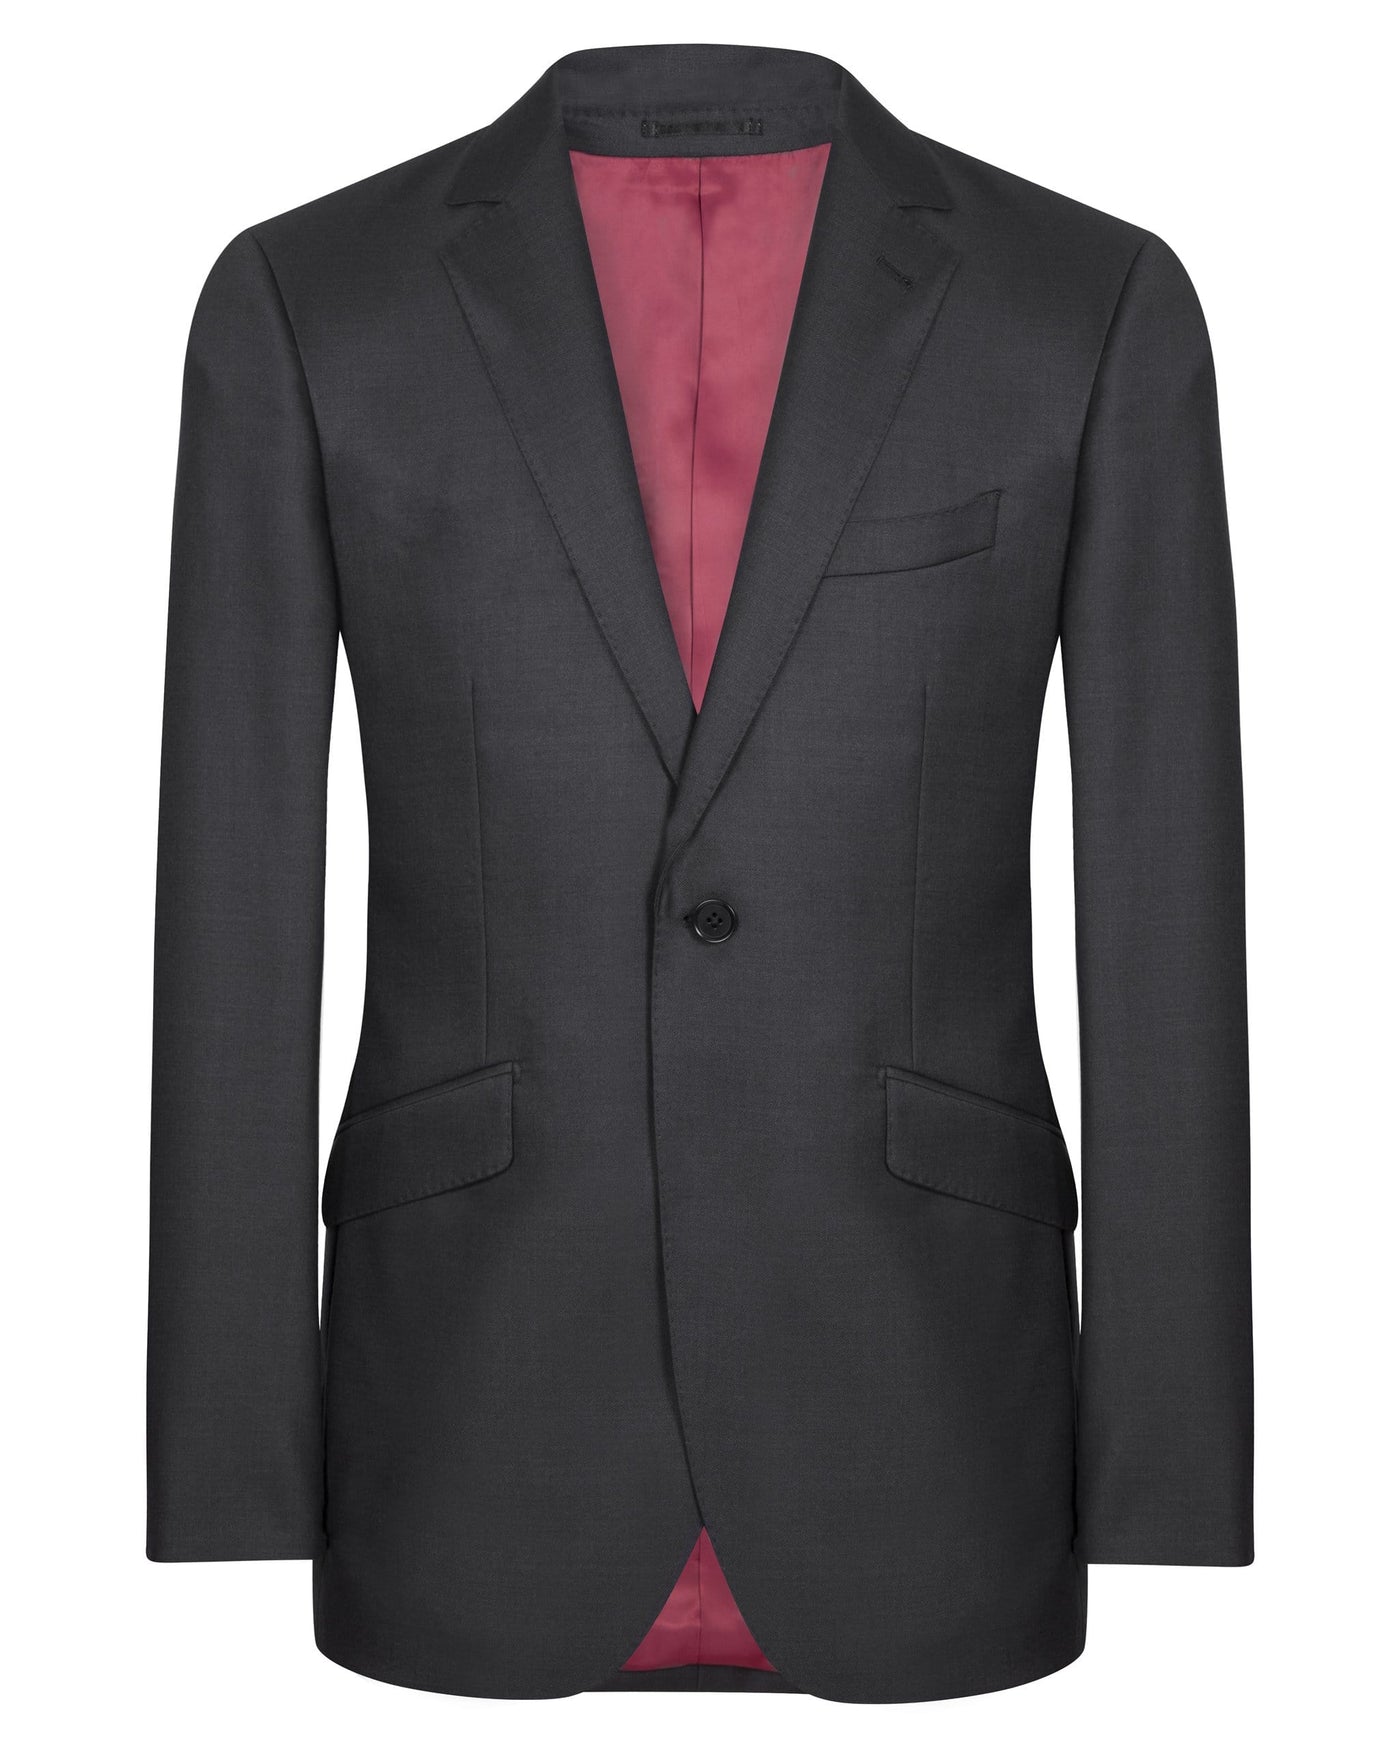 Charcoal Grey Suit - Mark marengo